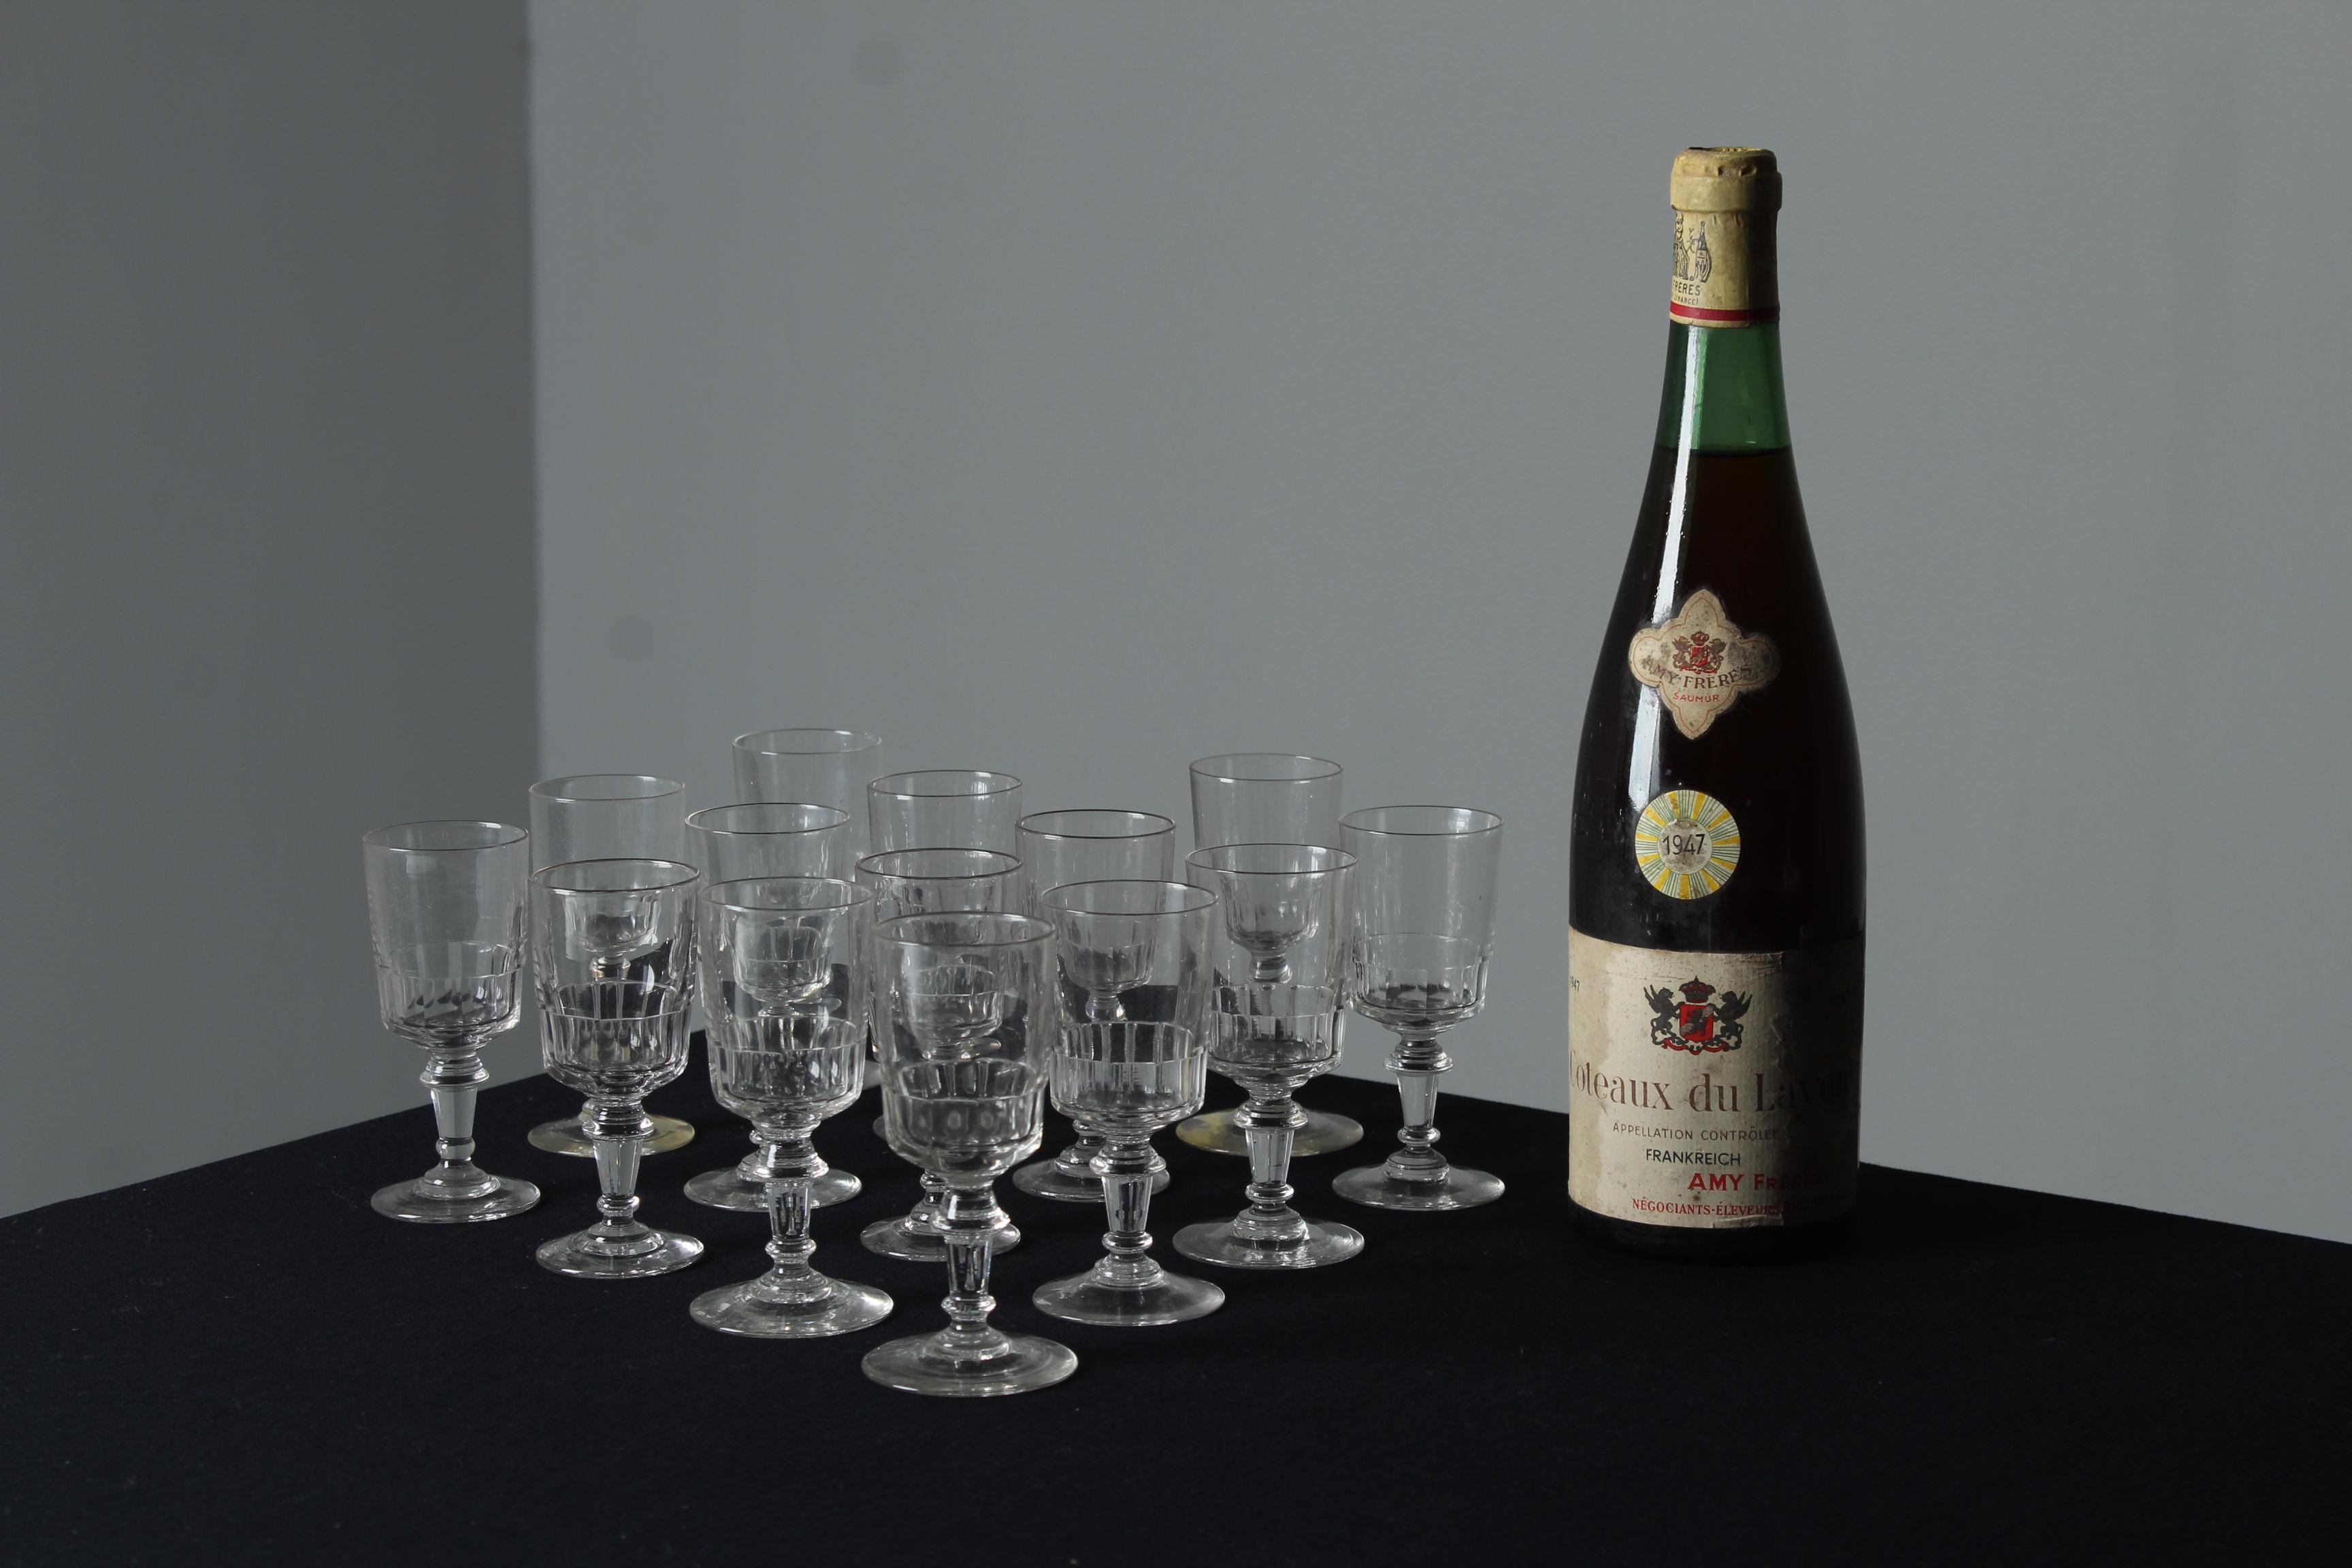 Un bel ensemble de quatorze verres à apéritif ou à schnaps, France, XXe siècle.

